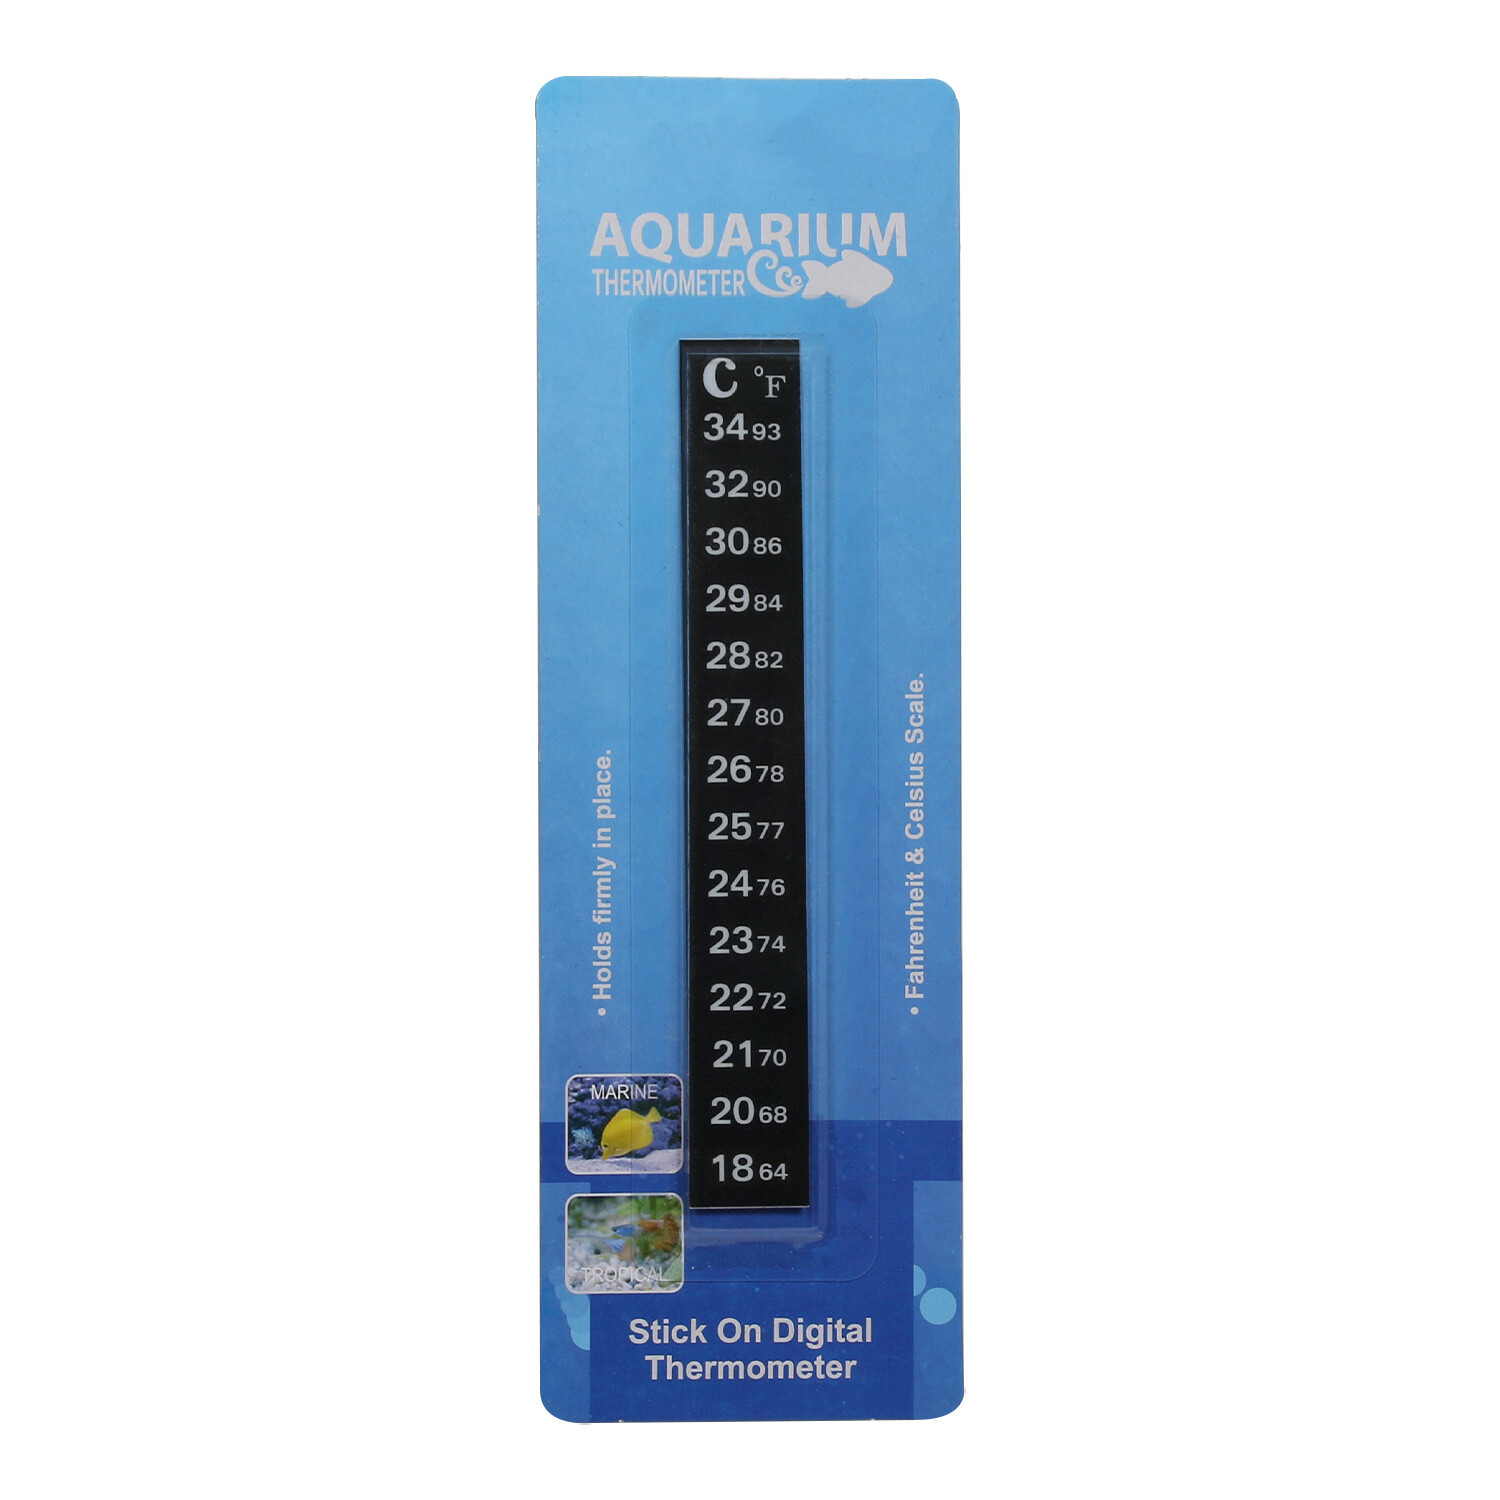 Stick On Digital Aquarium Thermometer Image